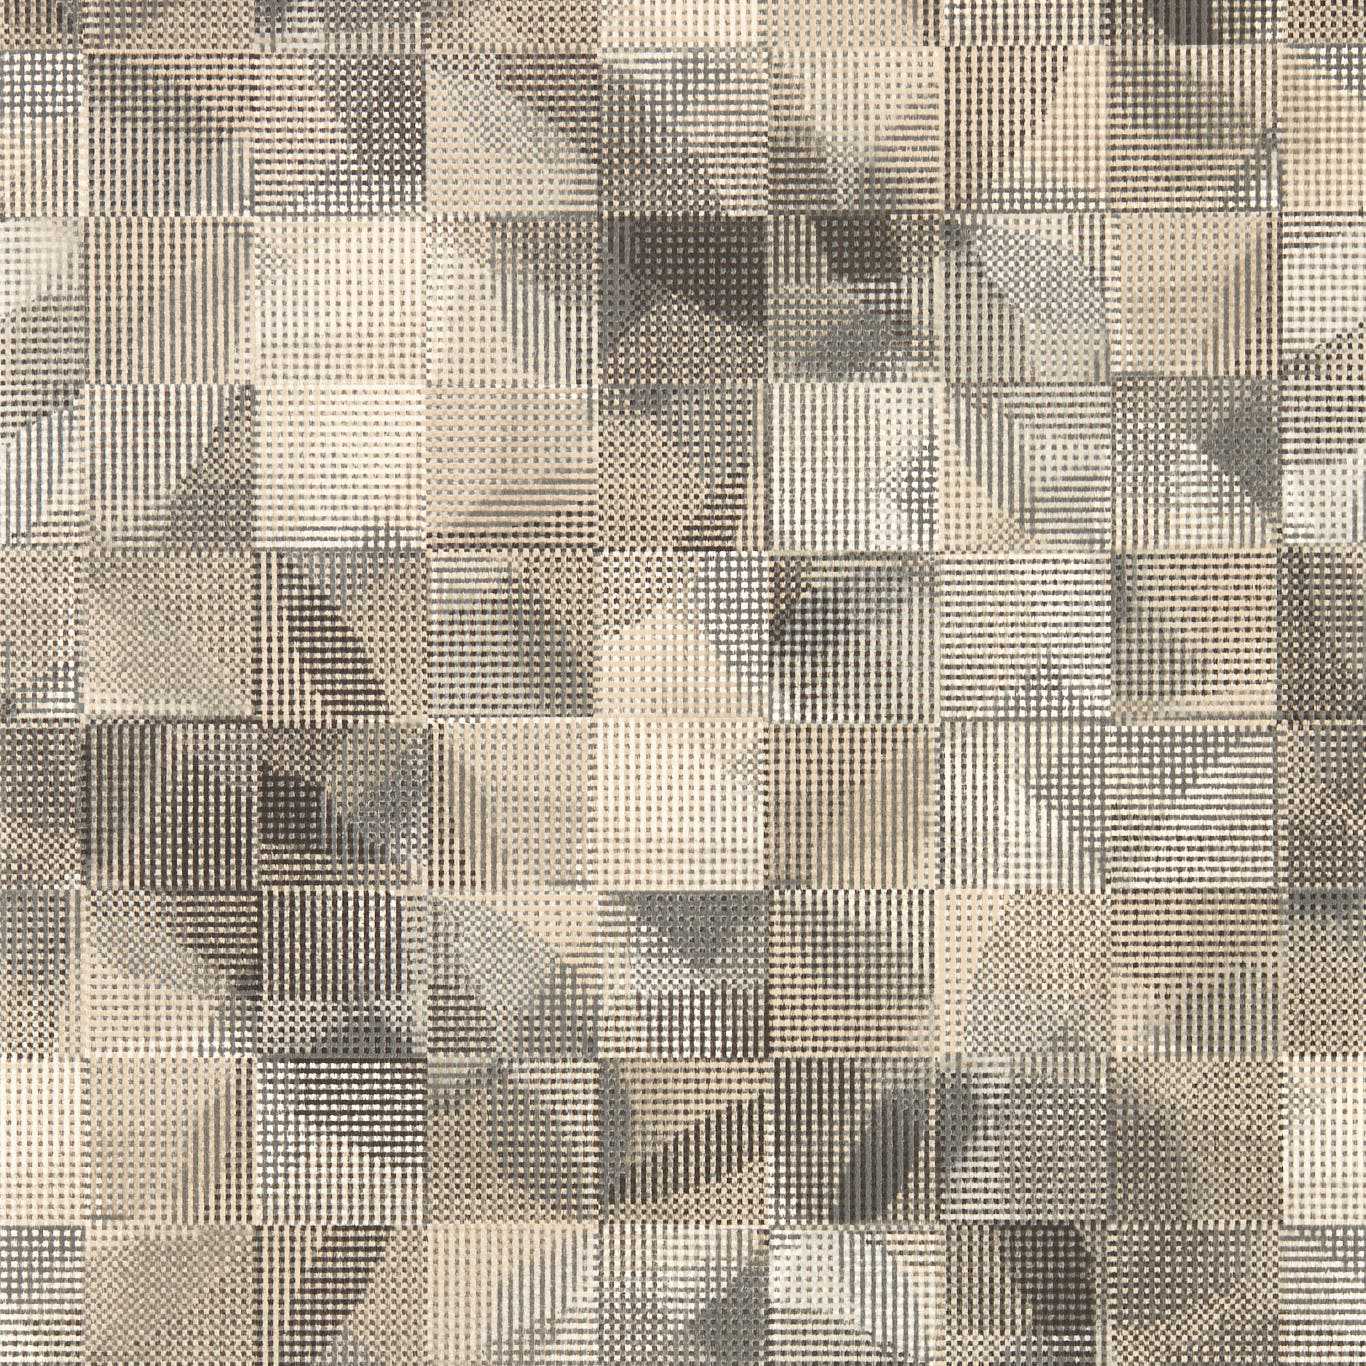 Impatto Charcoal/Linen Wp Charcoal/Linen Wallpaper W0182/01 by Clarke & Clarke